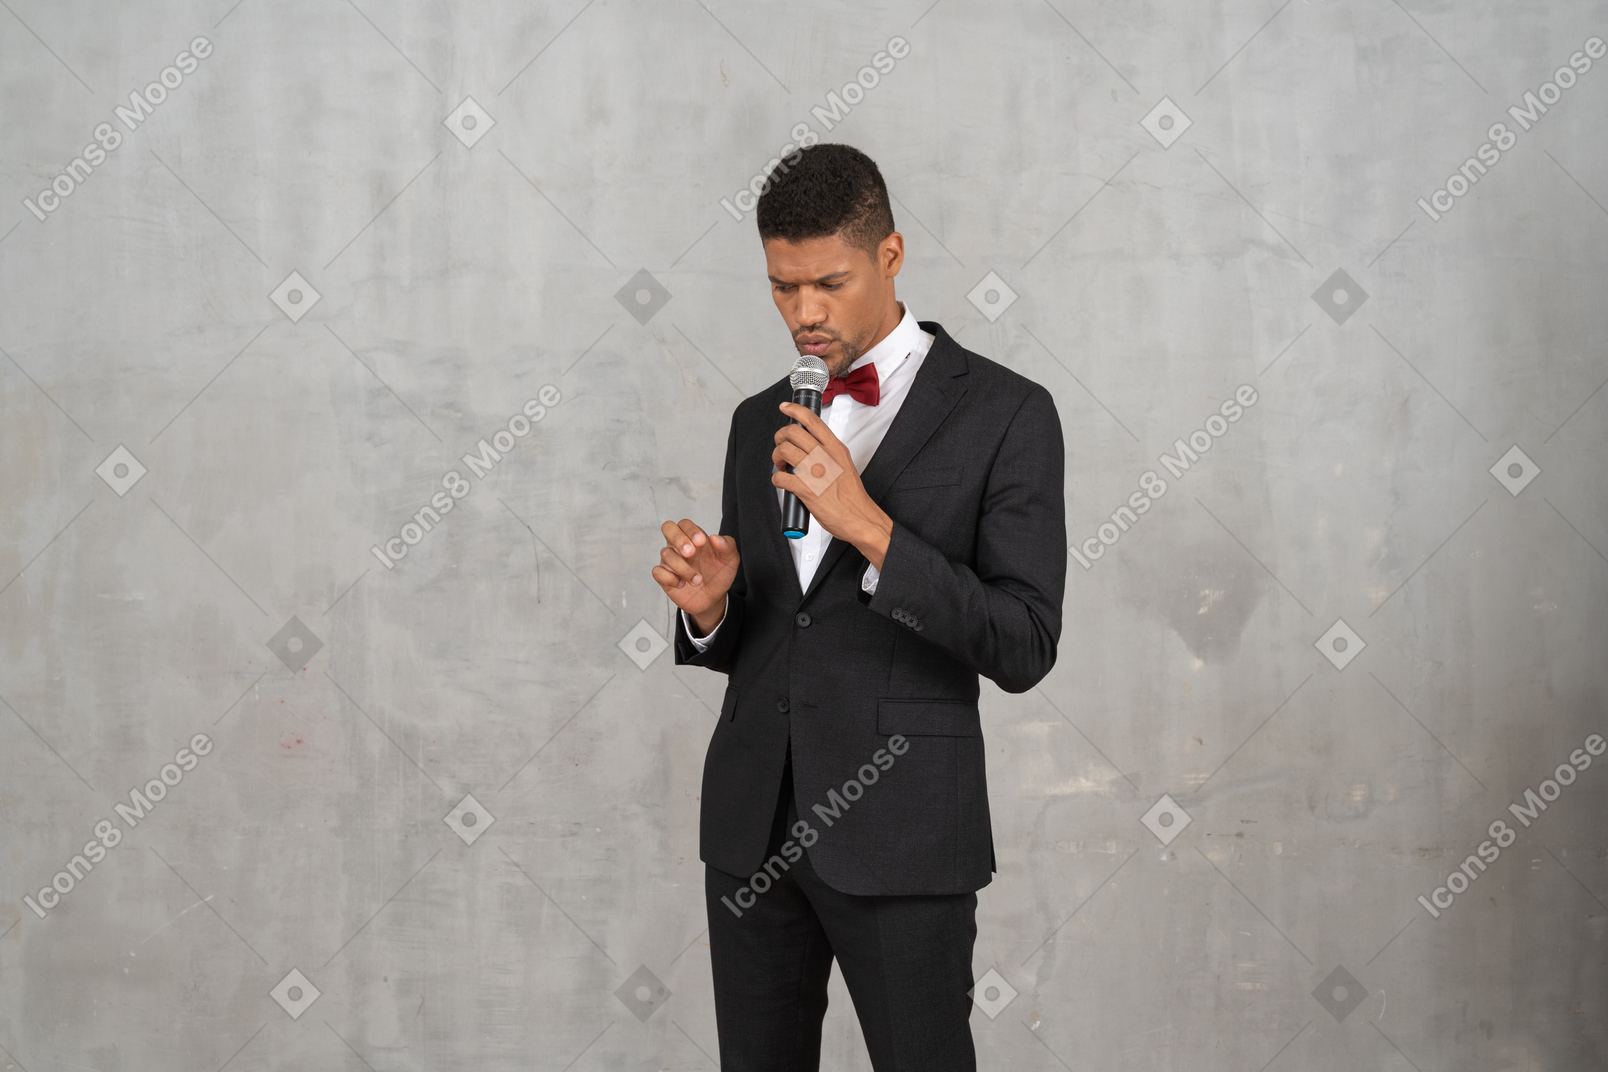 Düsterer mann im schwarzen anzug, der ein mikrofon hält